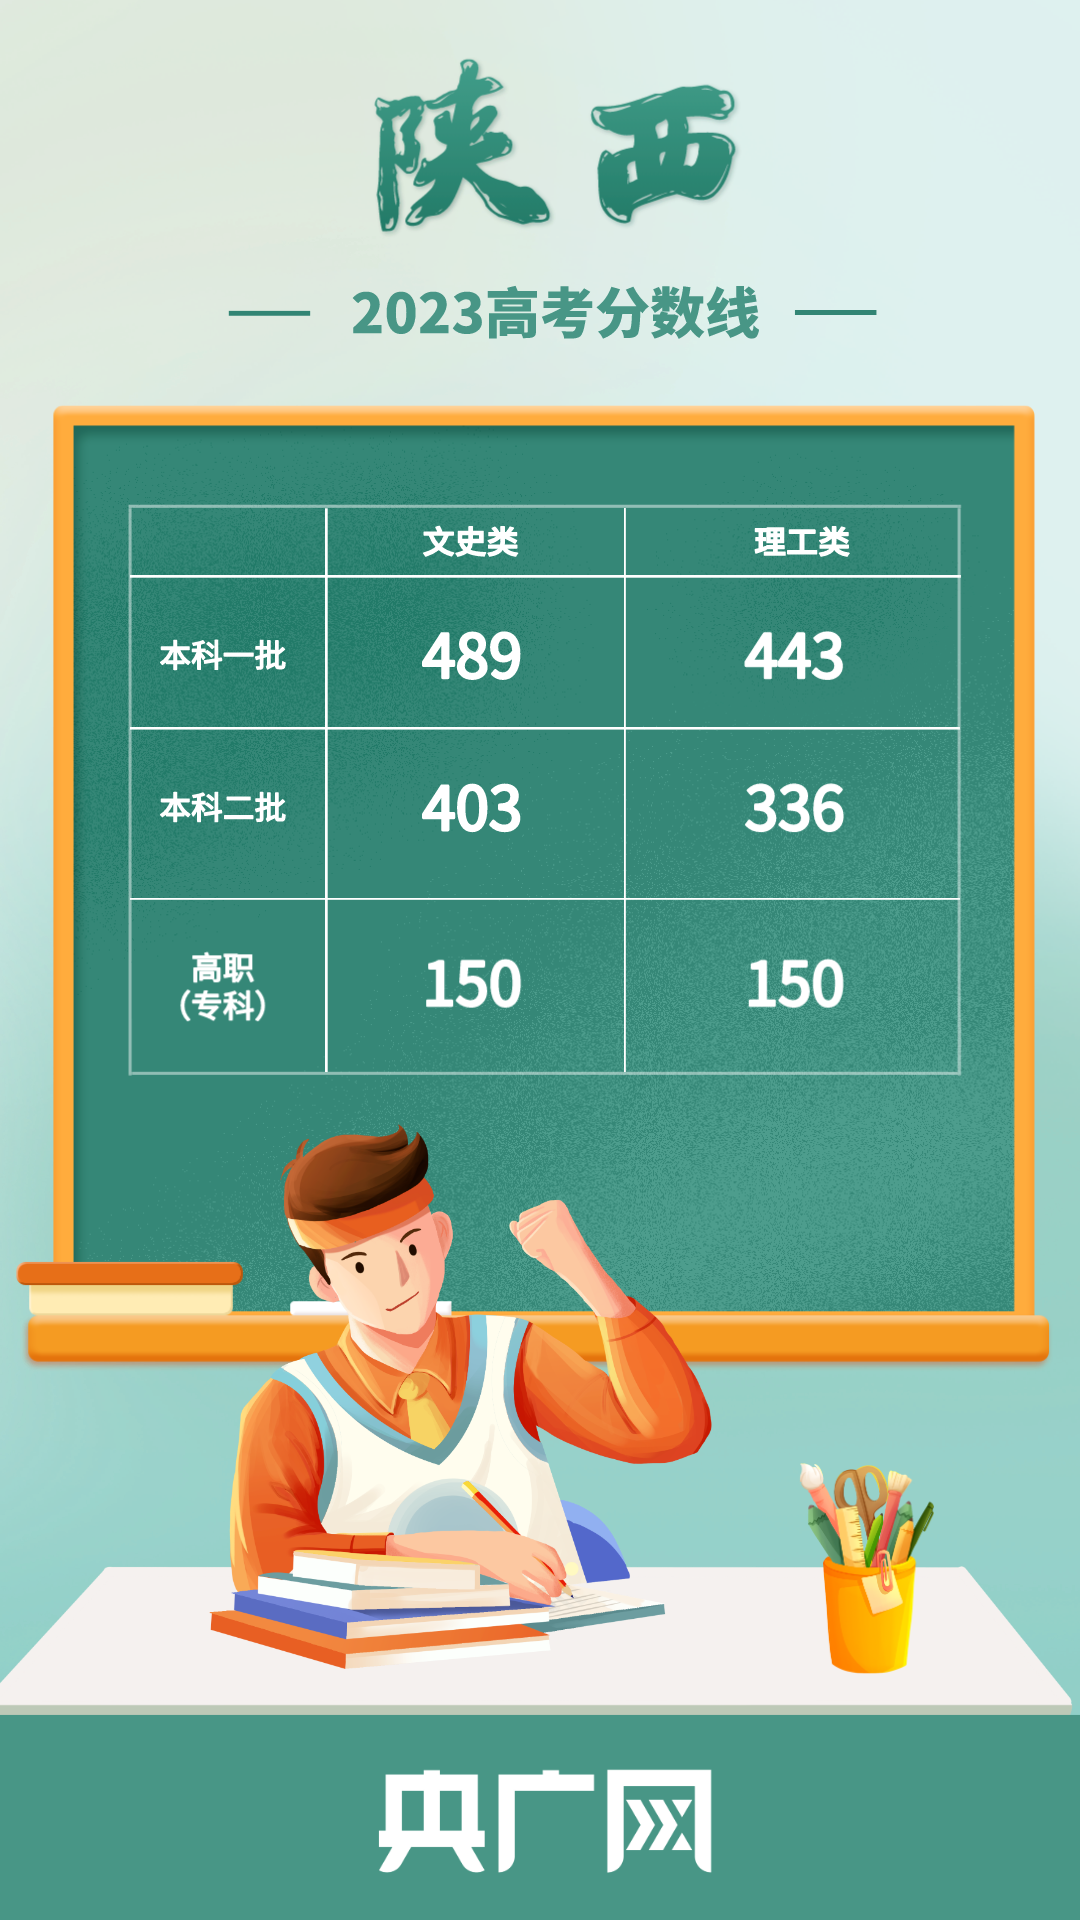 2023年陕西省高考录取分数线公布